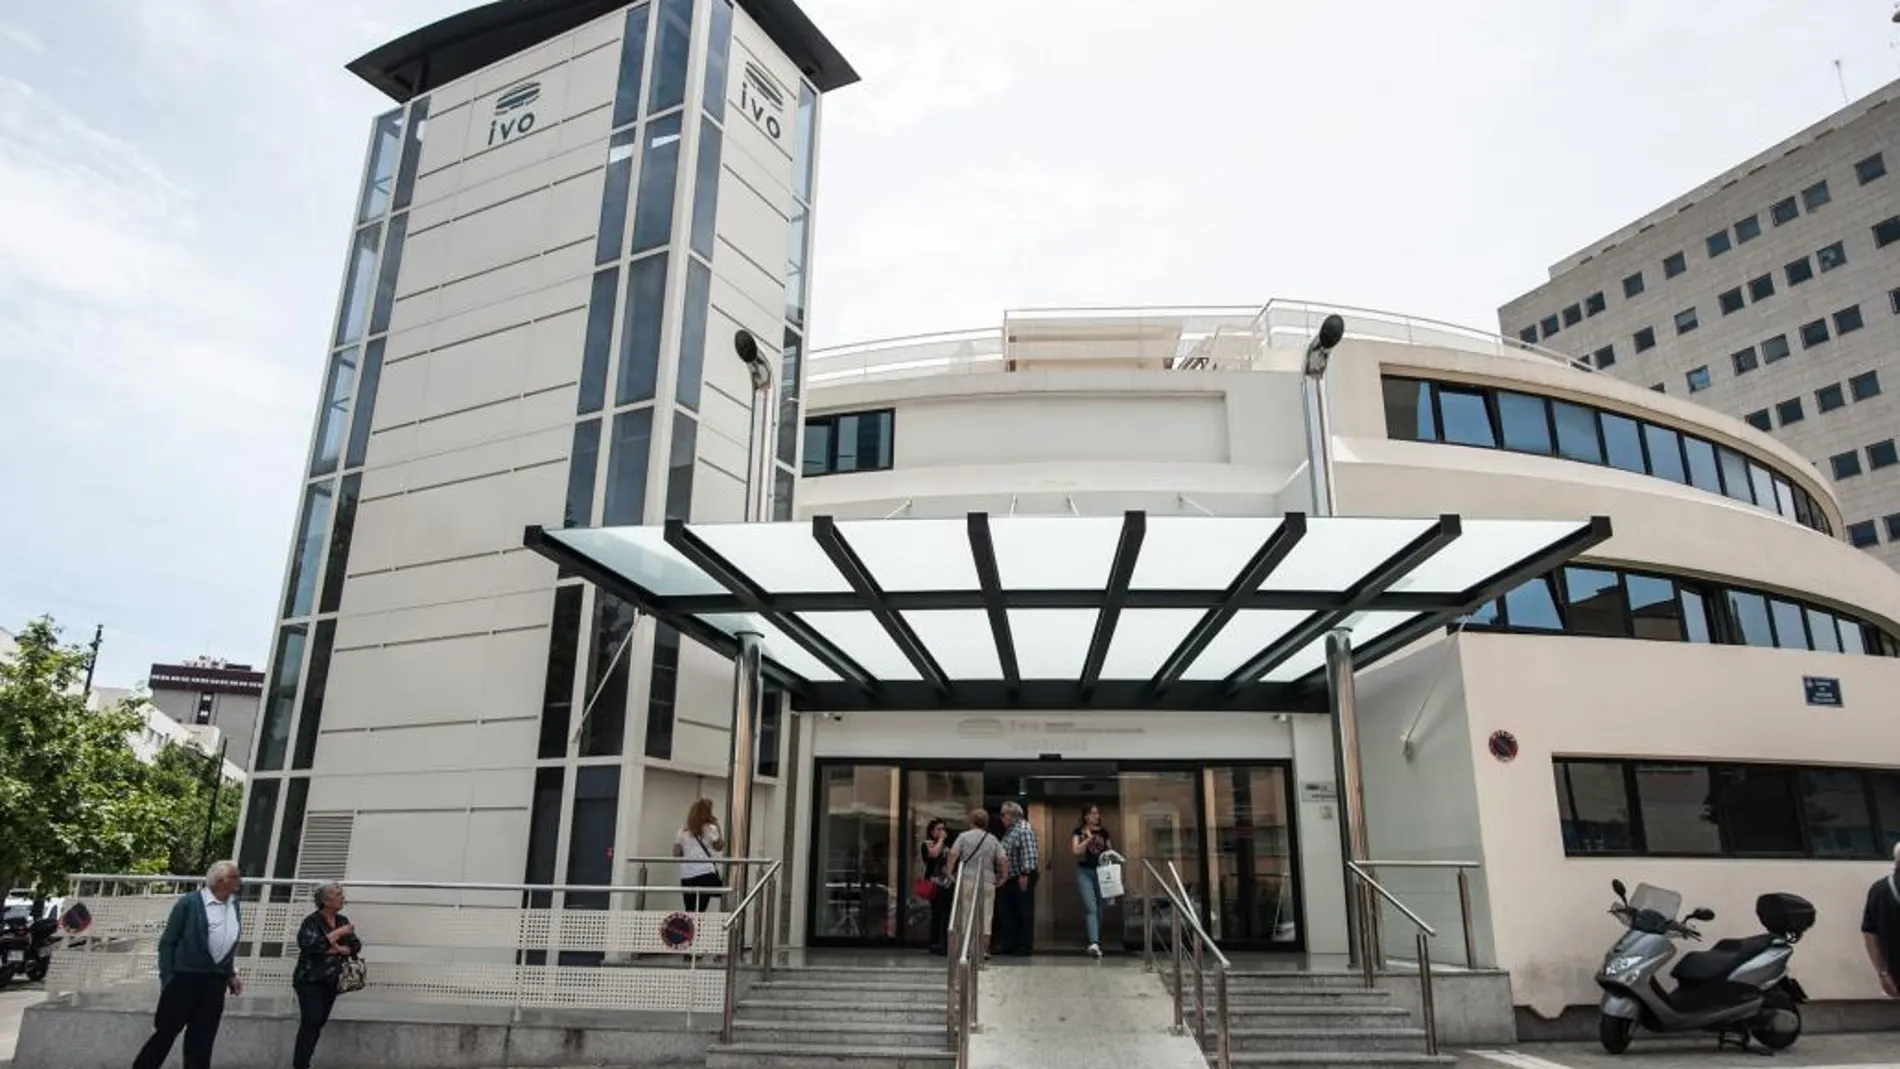 El Instituto Valenciano de Oncología es uno de los centros de referencia en el tratamiento contra el cáncer